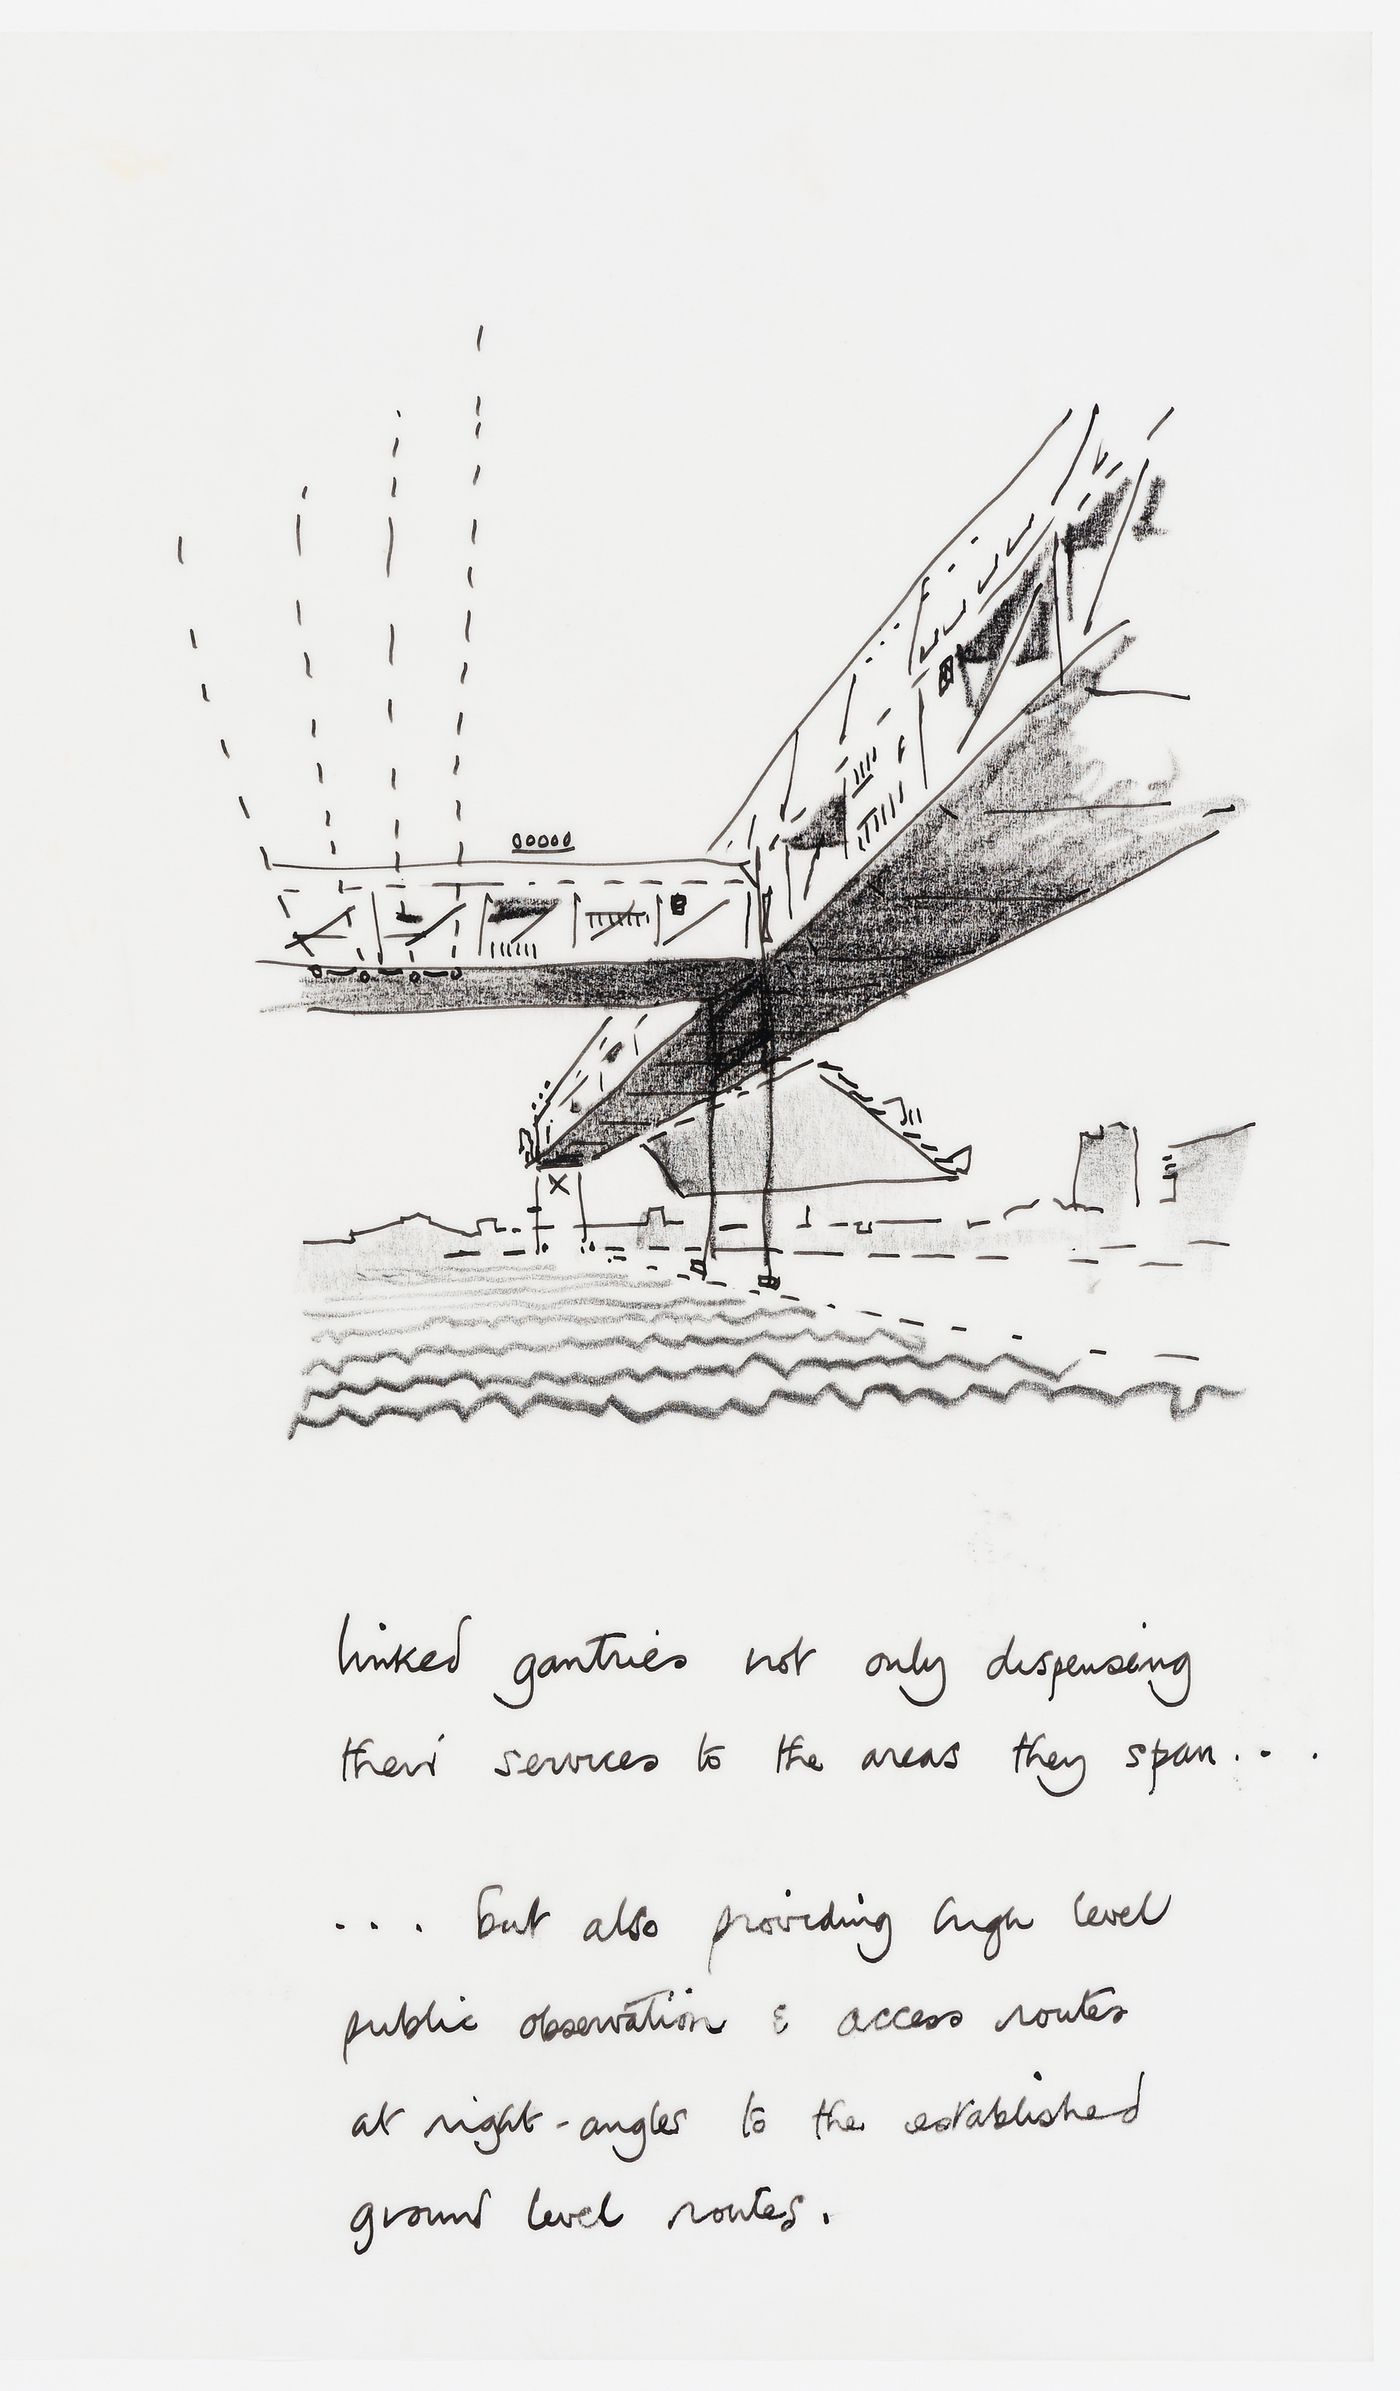 Concours international, Parc de la Villette, Paris: entry by Cedric Price: text with sketch of linked gantries